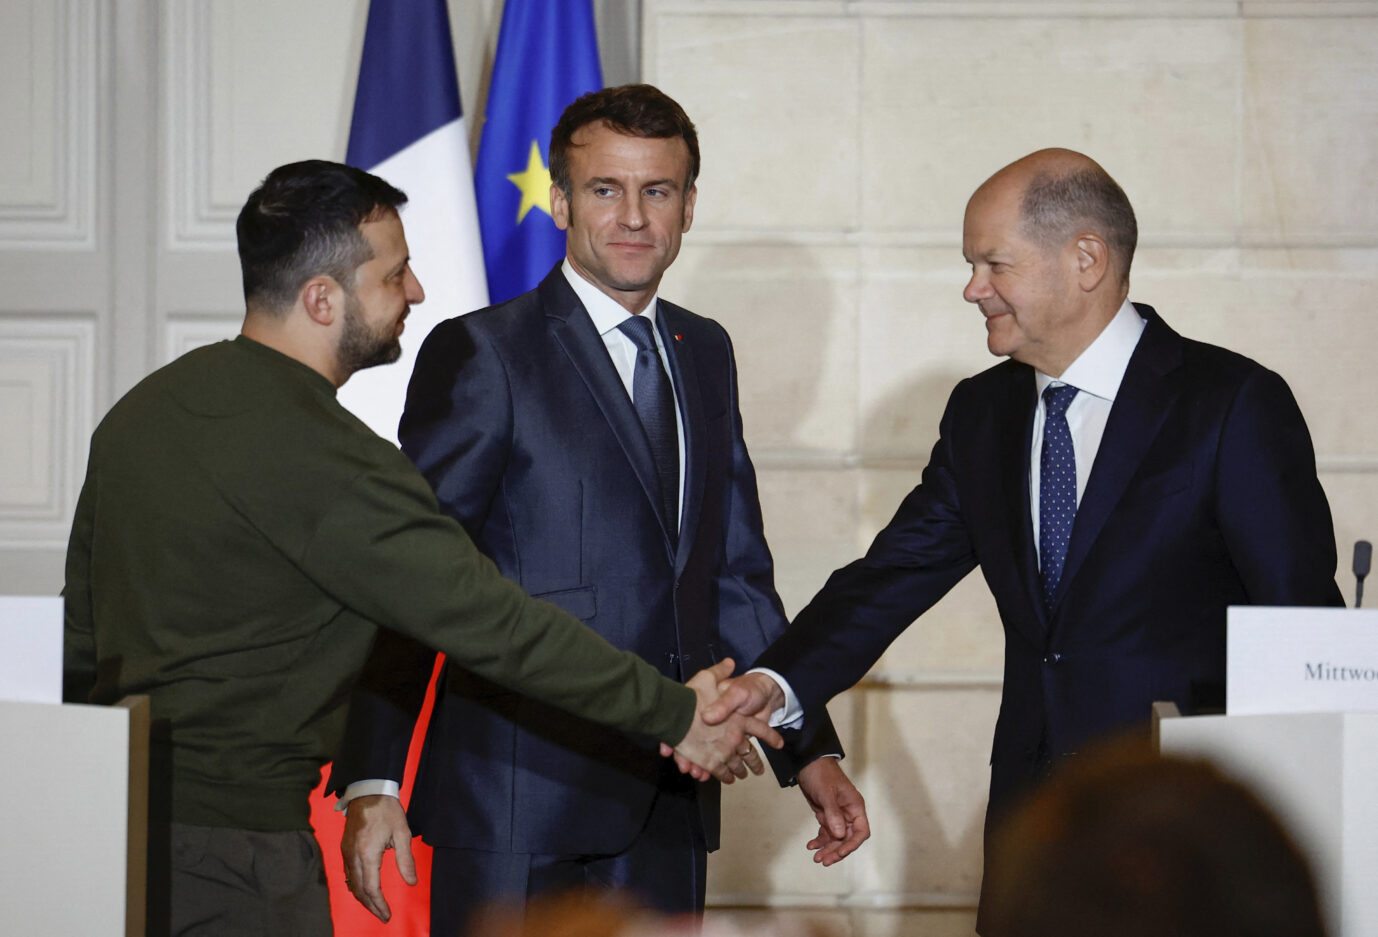 Kanzler Olaf Scholz reicht dem Präsidenten der Ukaine, Wolodymyr Selenskyj die Hand. Frankreichs Präsident Emmanuel Macron schaut zu.